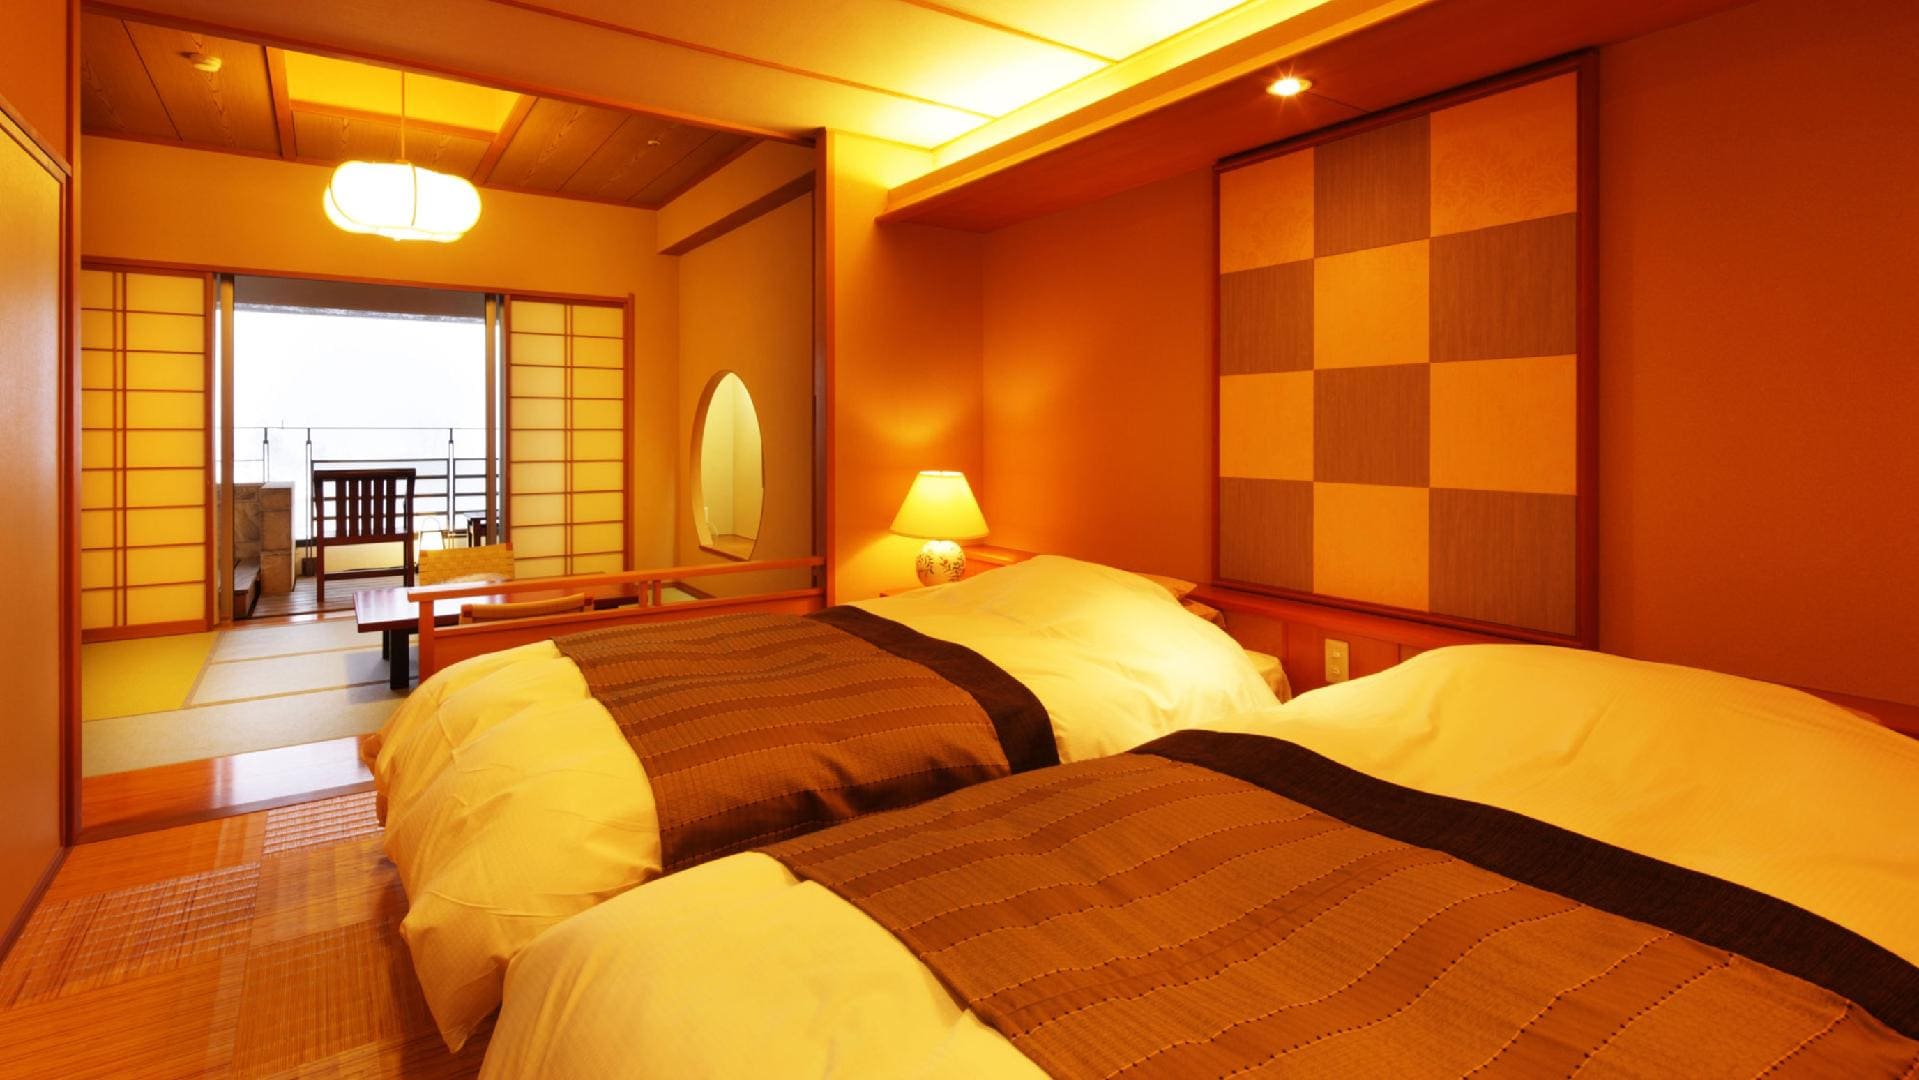  Kamar tamu dengan pemandian terbuka tipe kamar Jepang dan Barat